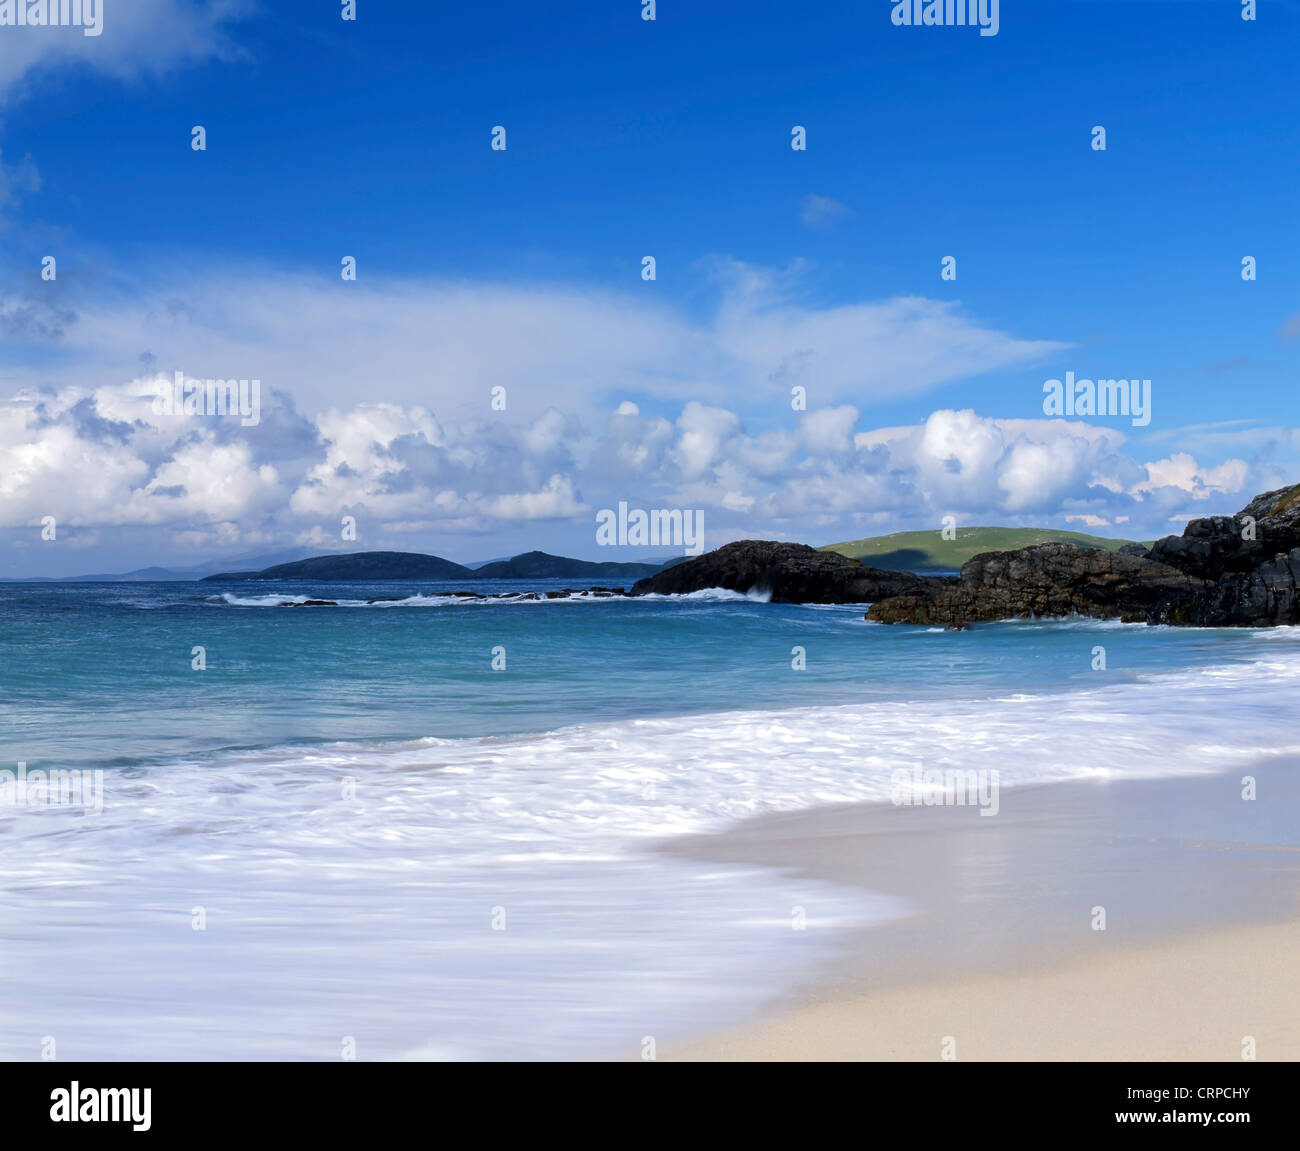 Waves roll onto the sandy beach near Borgh on the tiny Hebridean island of Barra. Stock Photo